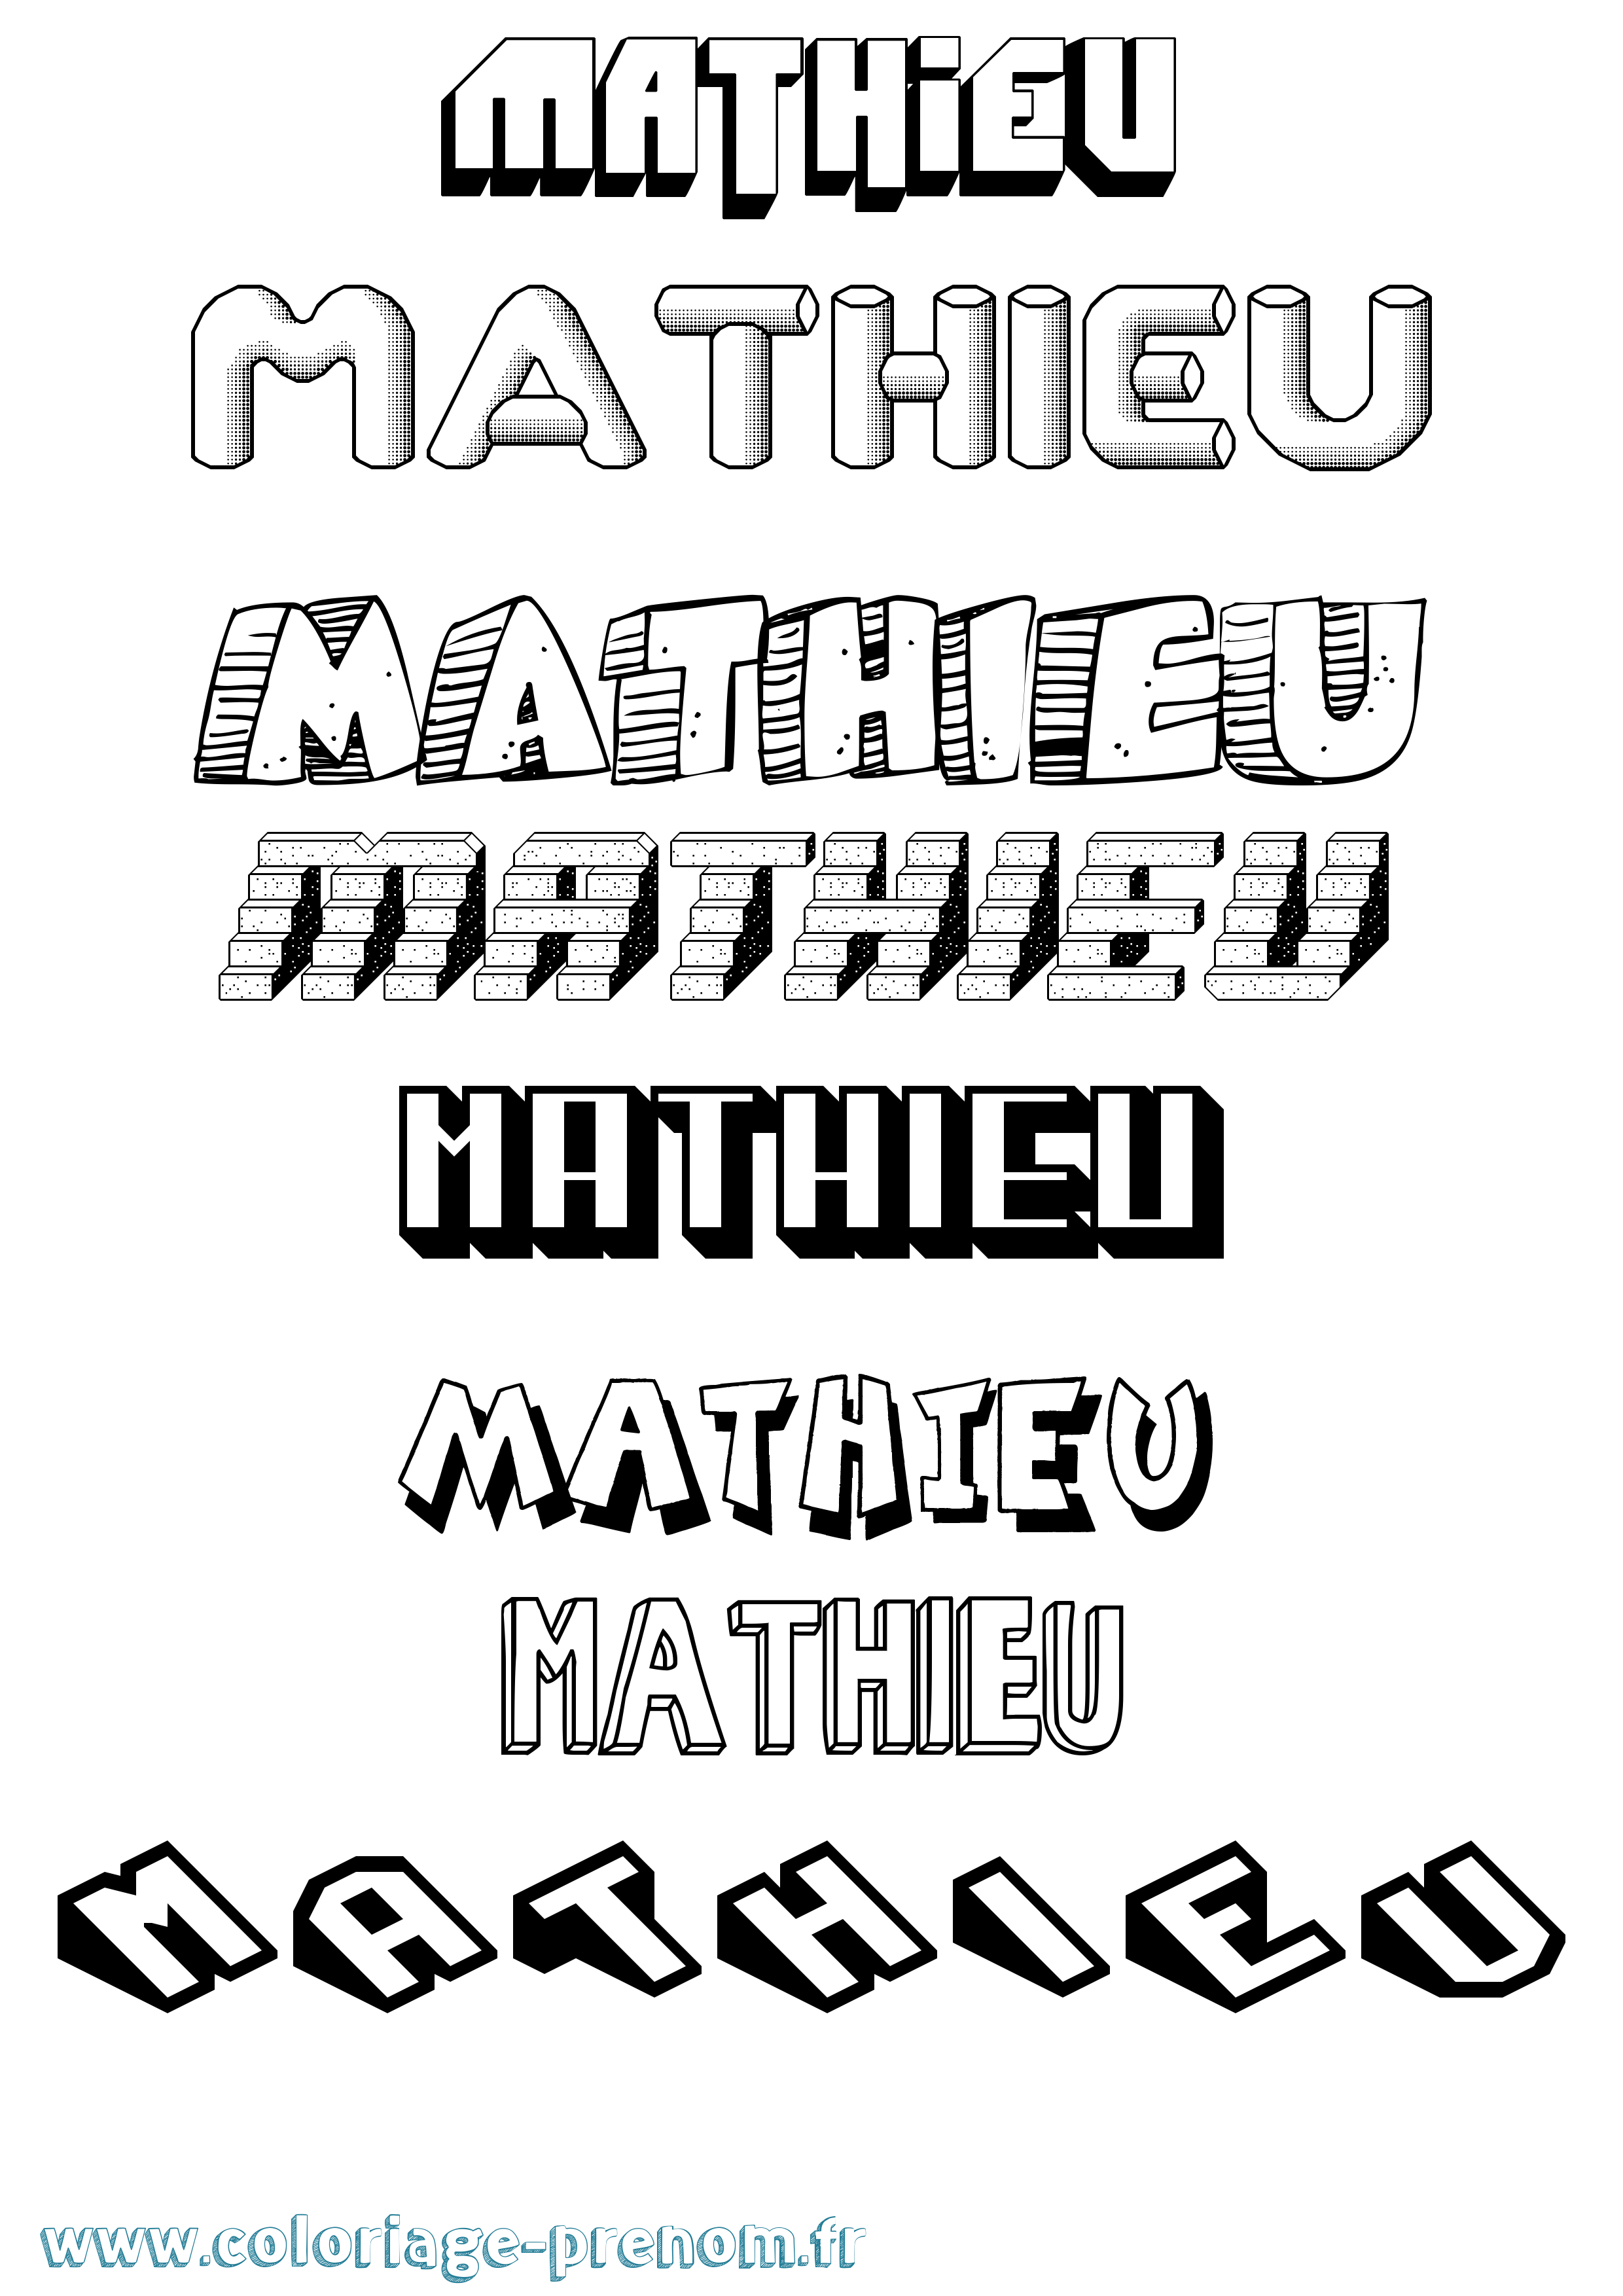 Coloriage prénom Mathieu